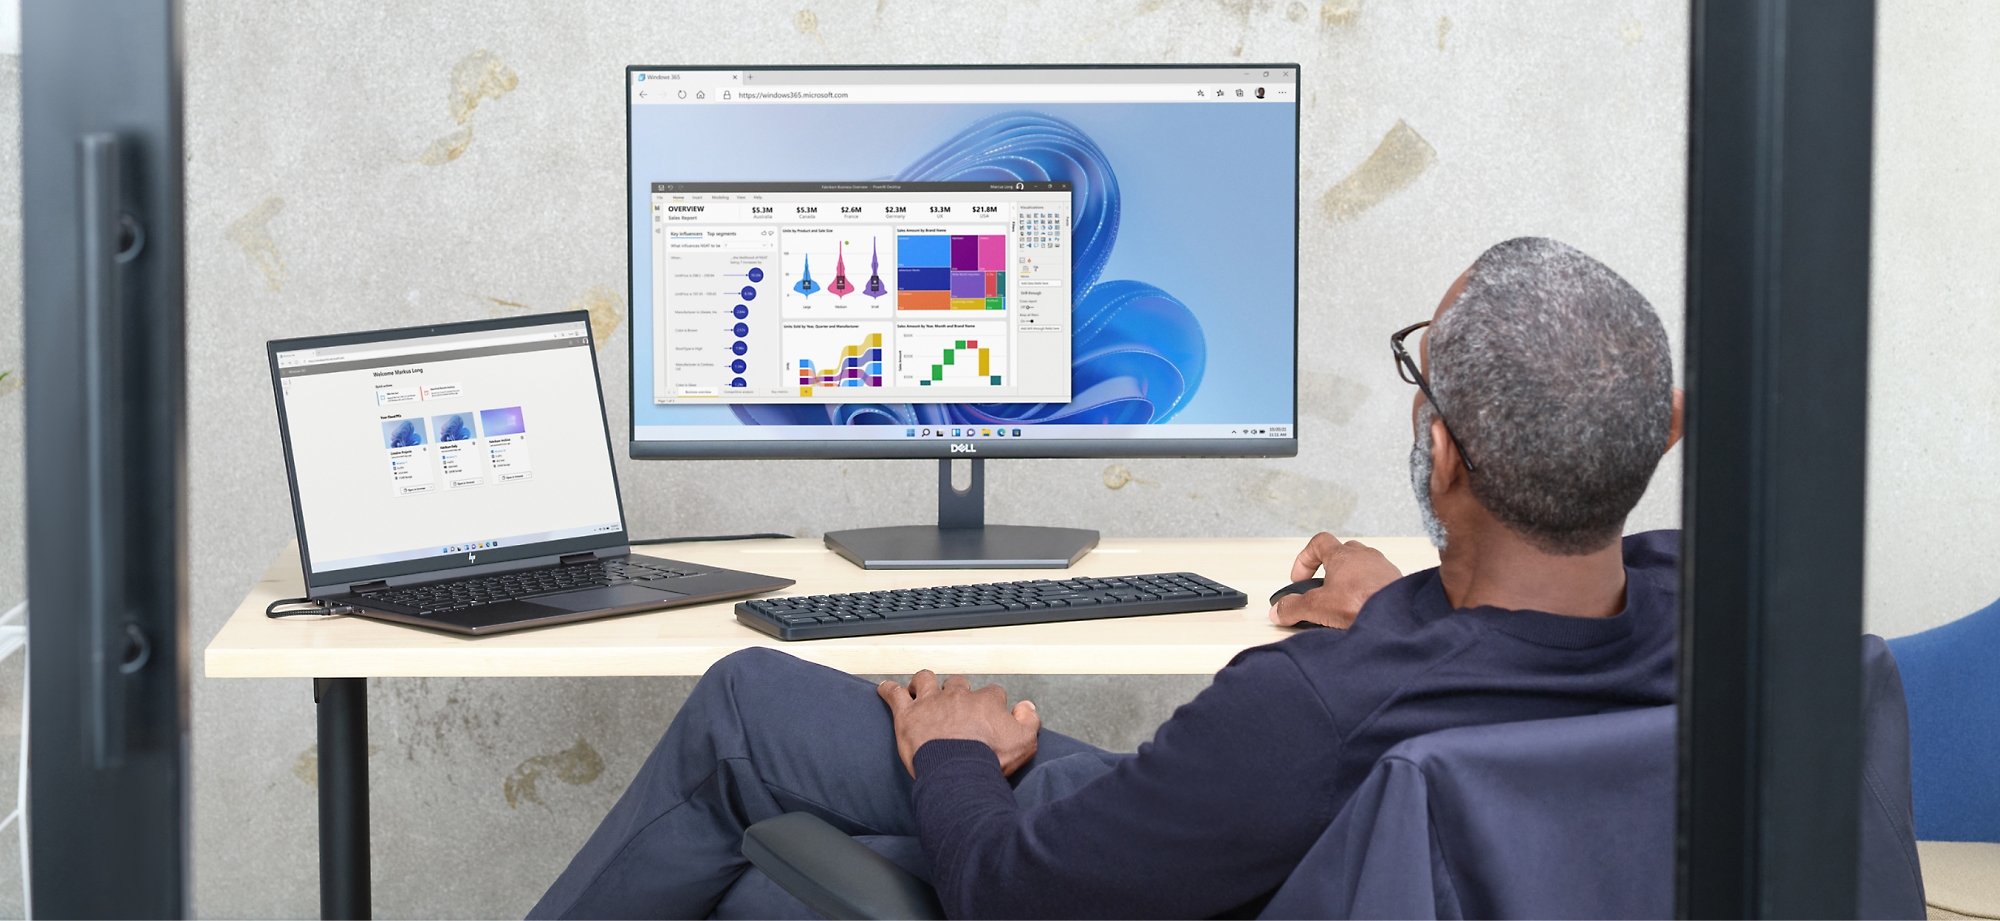 Un hombre revisa gráficos de datos en una pantalla de ordenador y un portátil en una oficina.